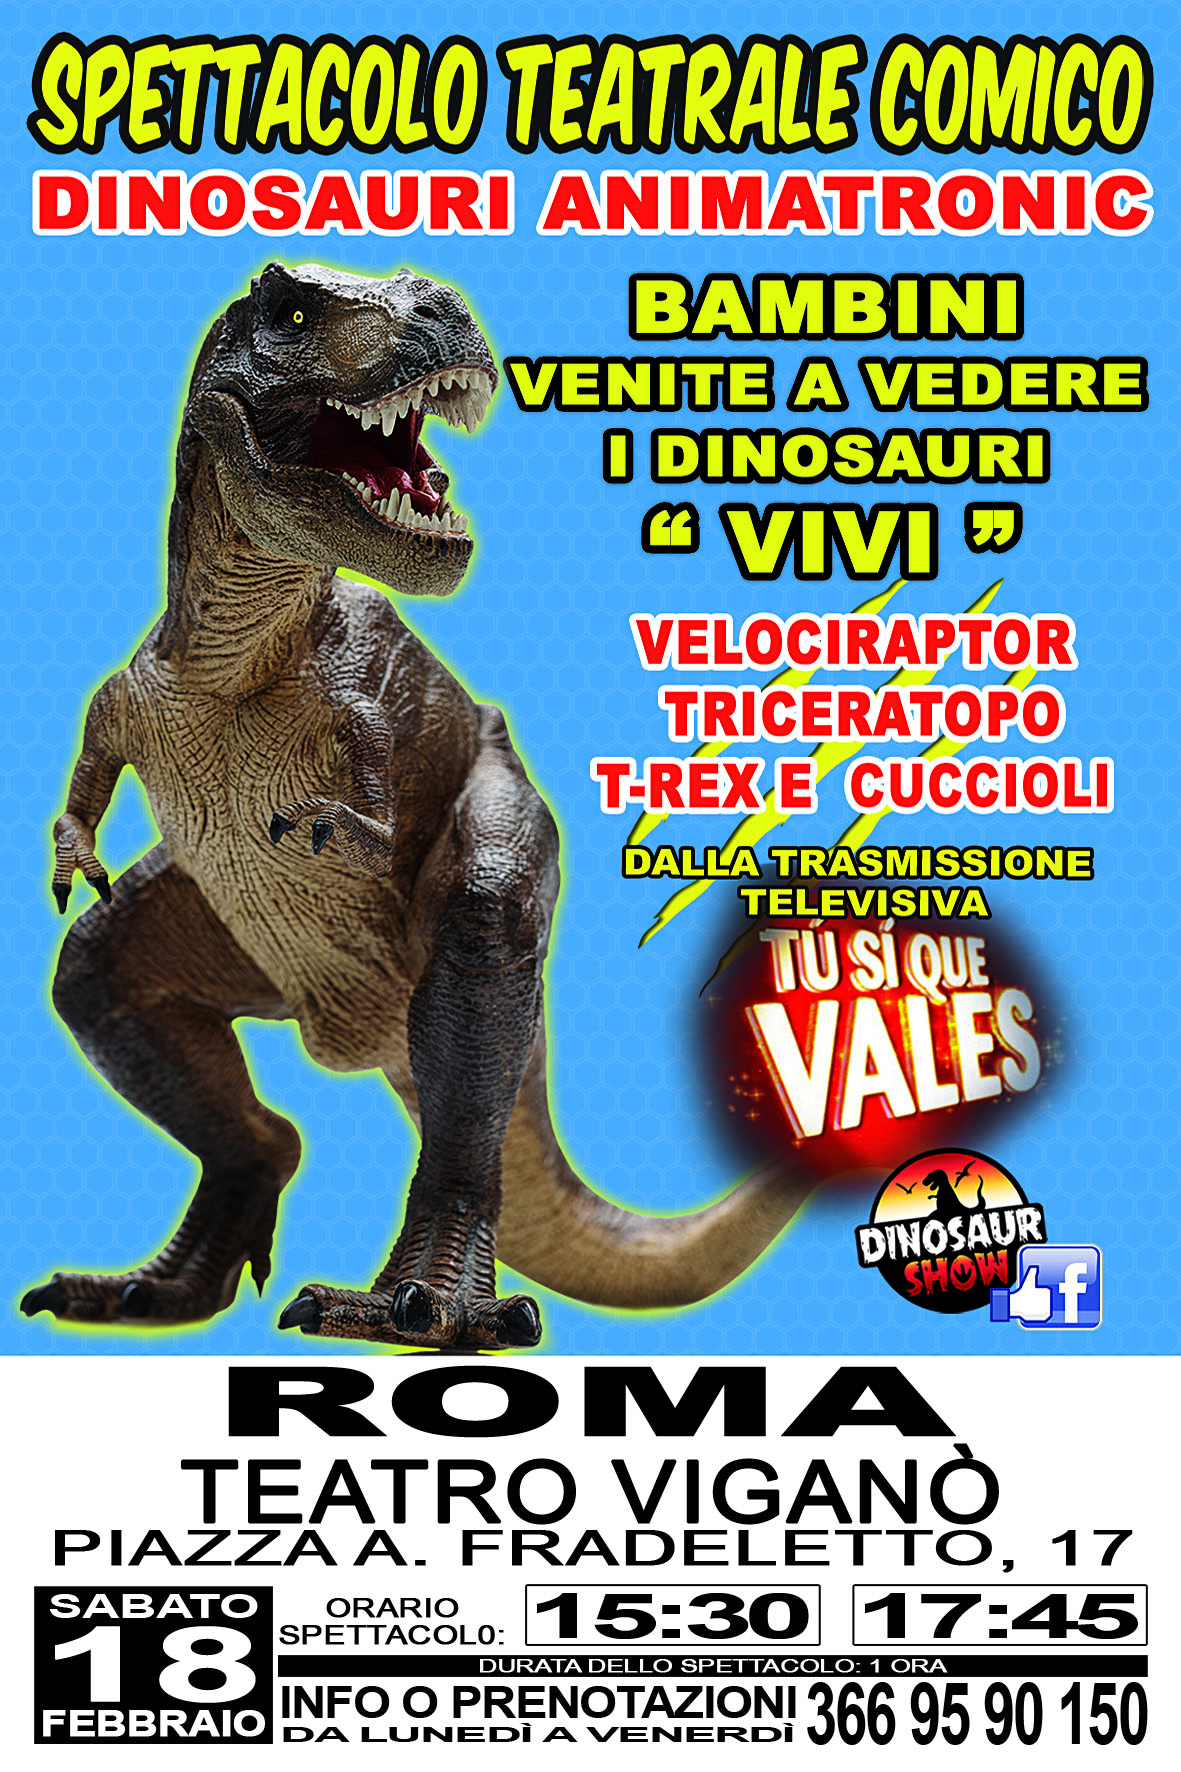 Portalo a conoscere i dinosauri dal vivo, al “Dinosaur Show” | B in Rome